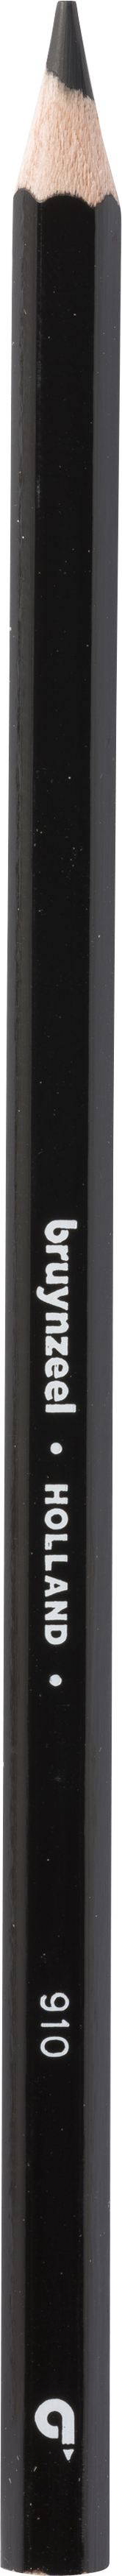 BRUYNZEEL Crayon de couleur Super 3.3mm 60516910 noir